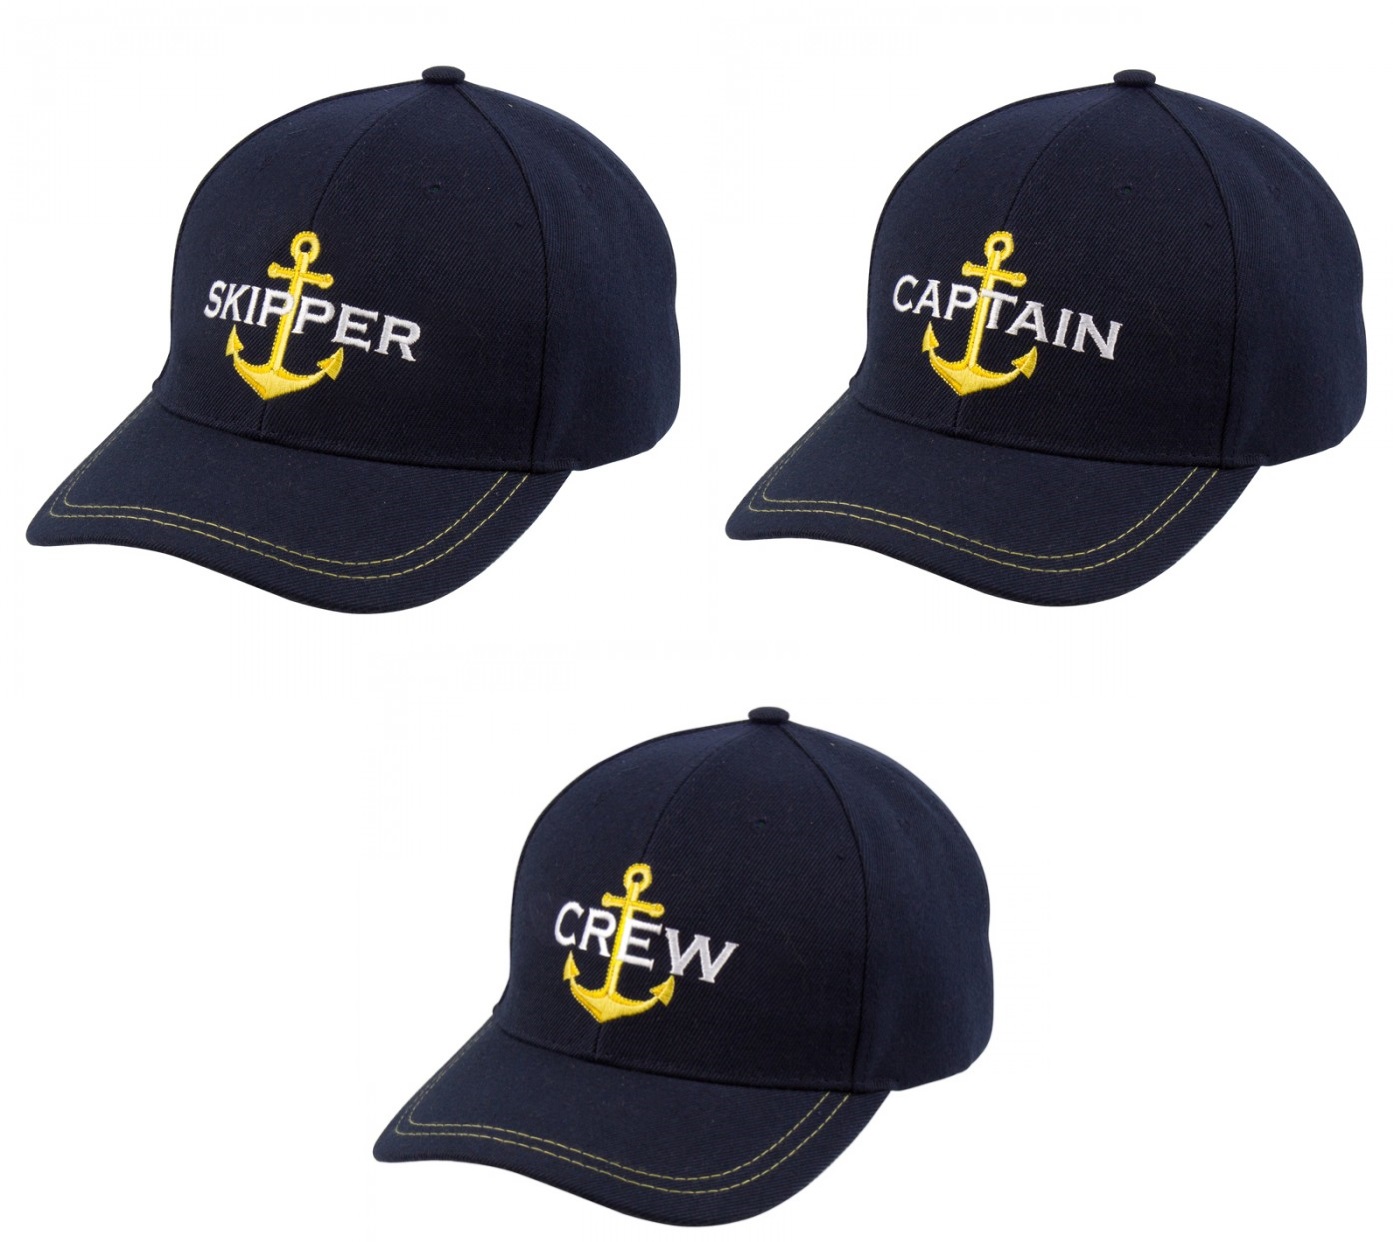 Yachting Cap in drei Ausführungen